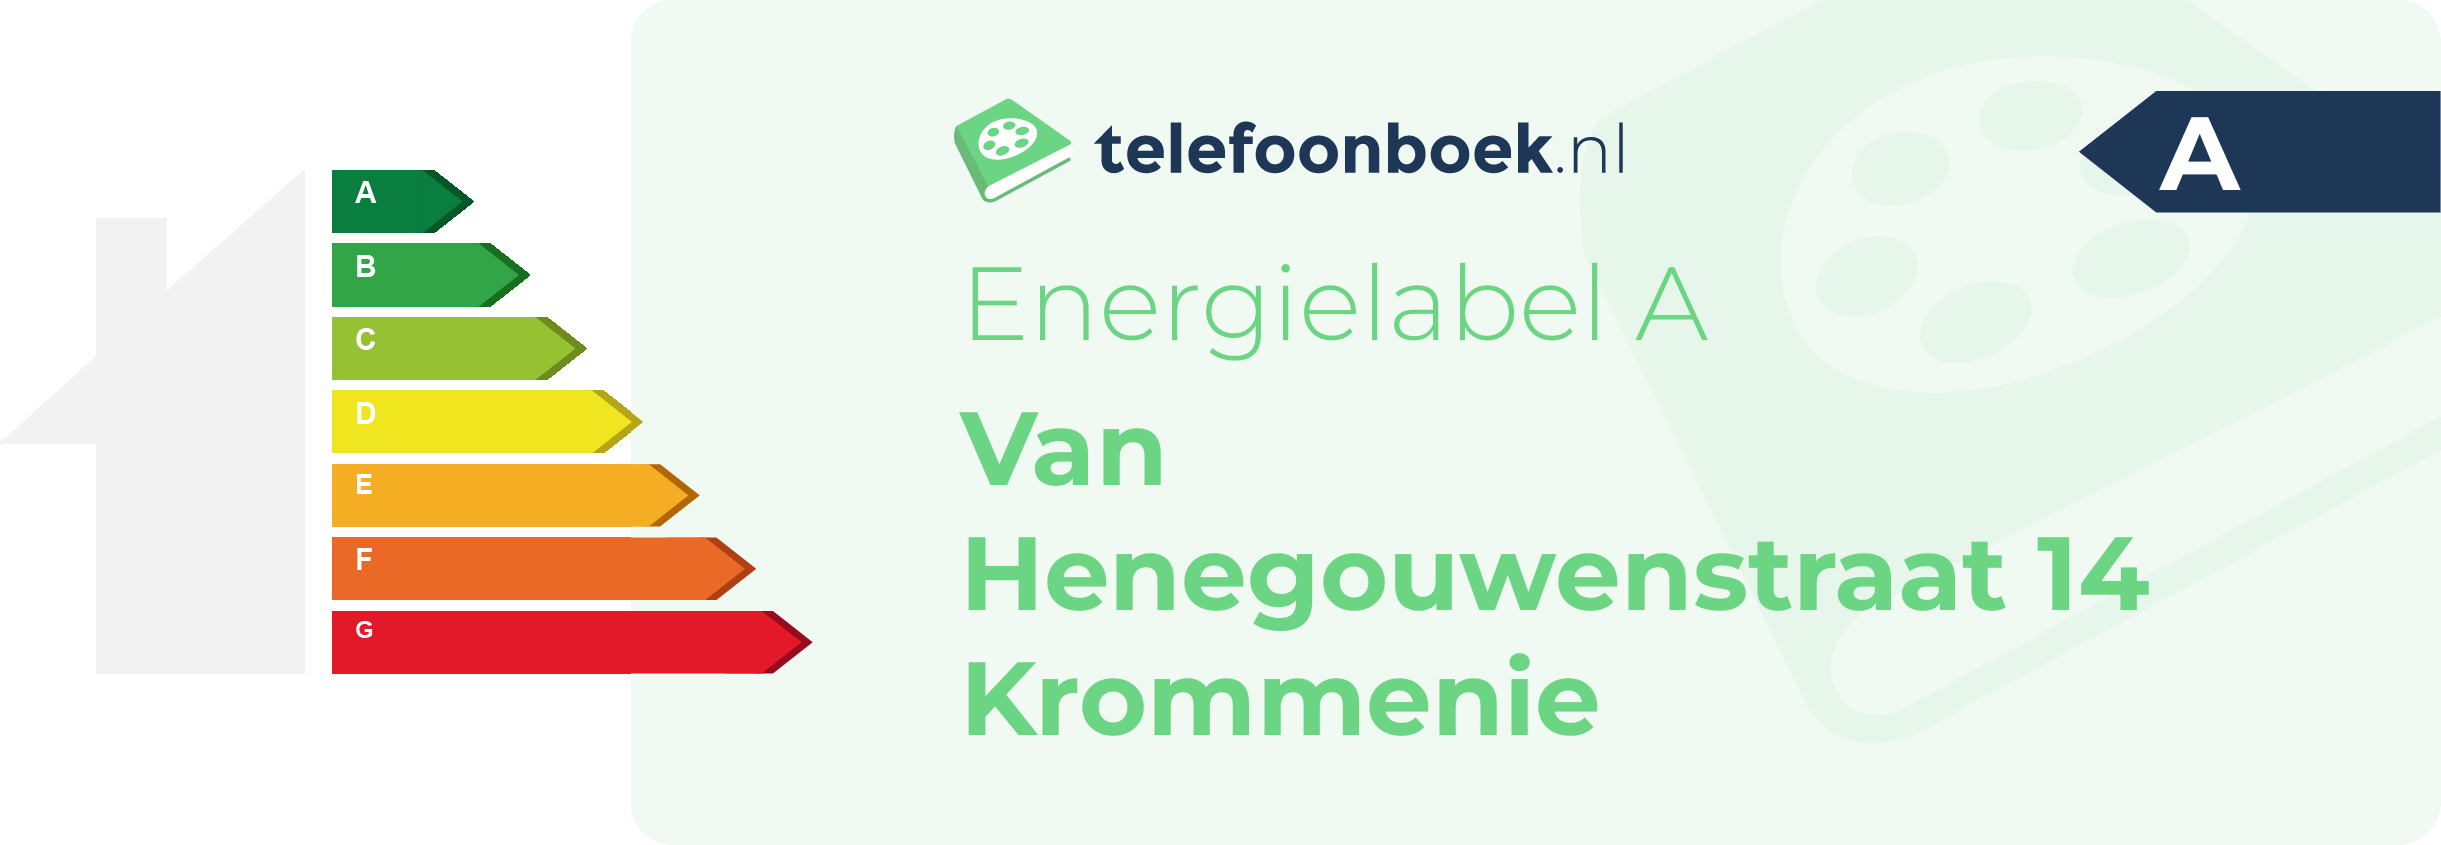 Energielabel Van Henegouwenstraat 14 Krommenie